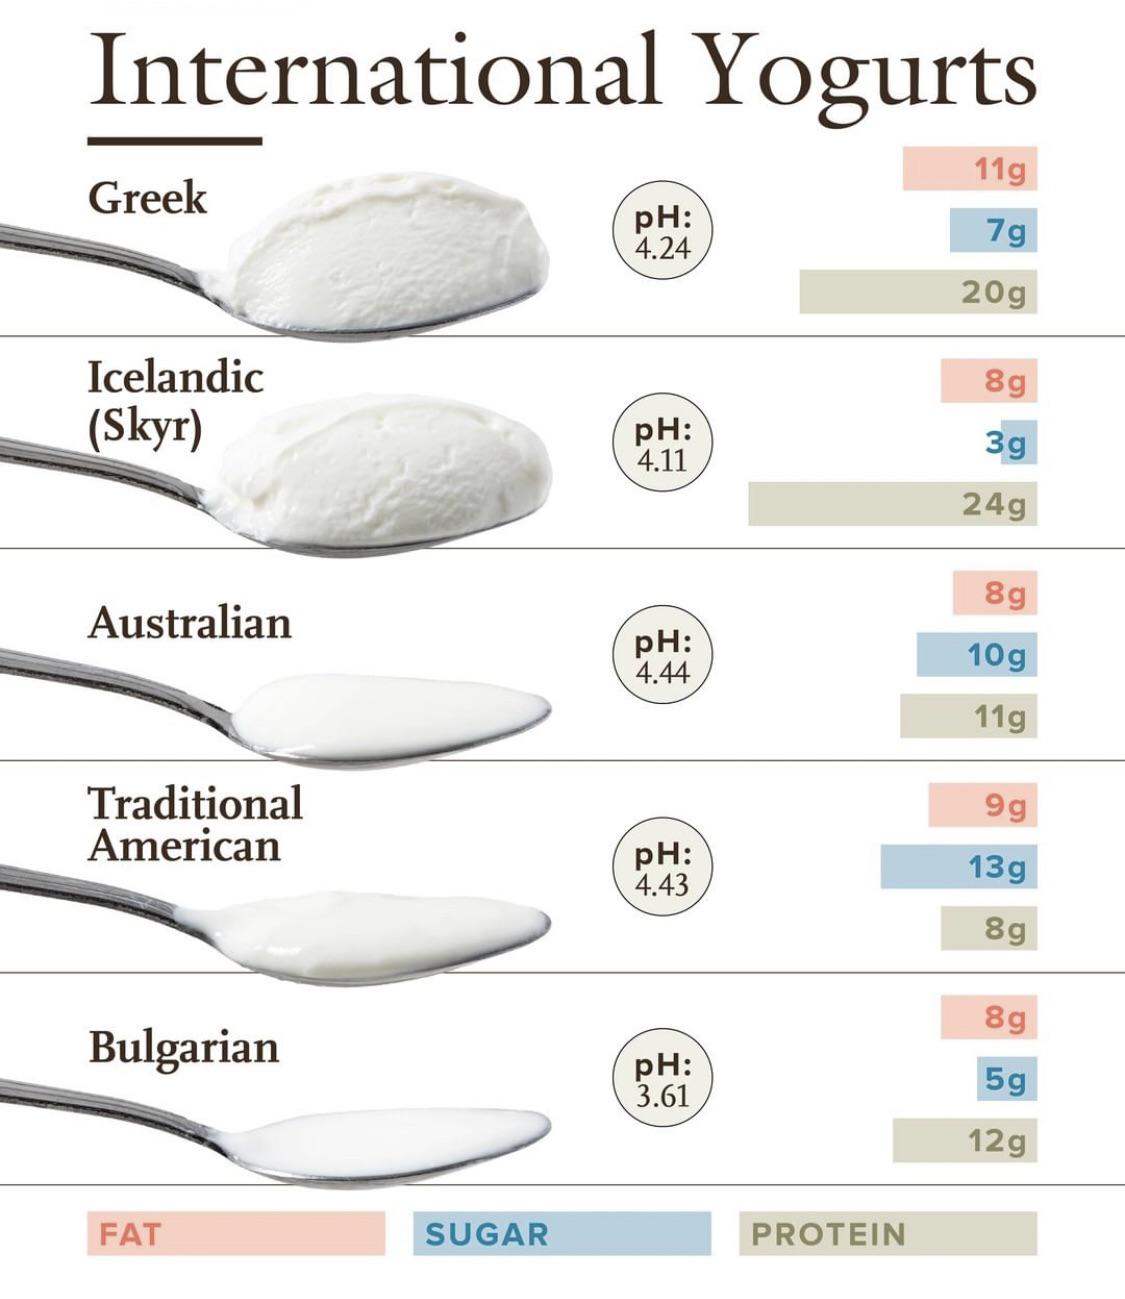 Yogurt around the world.